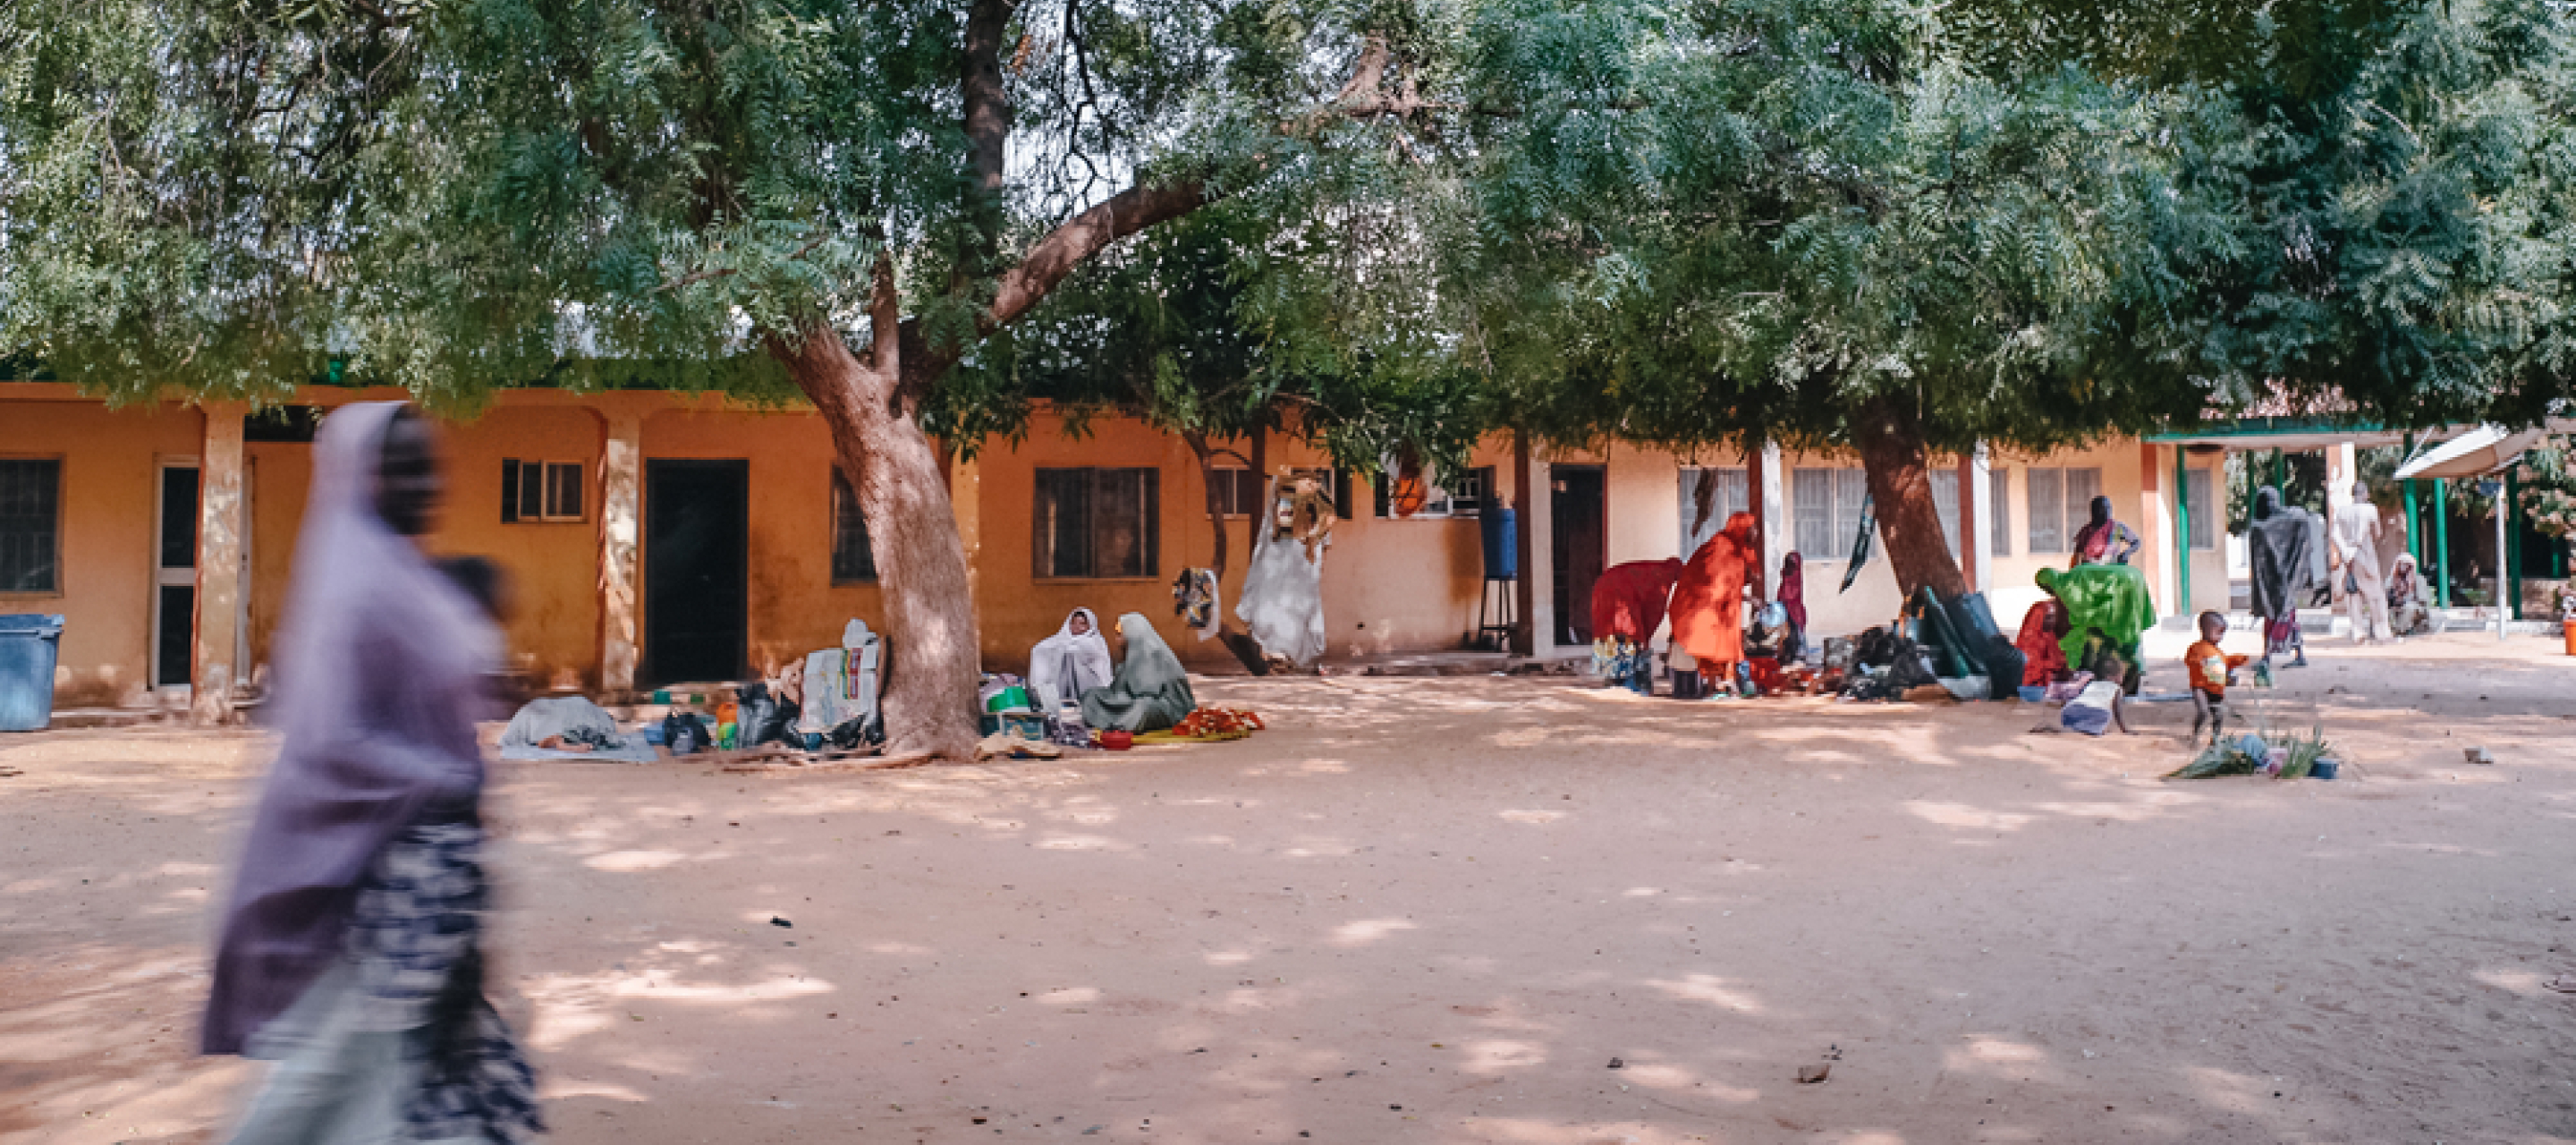 Sokoto Noma Krankenhaus Nigeria kostenlose medizinische Versorgung